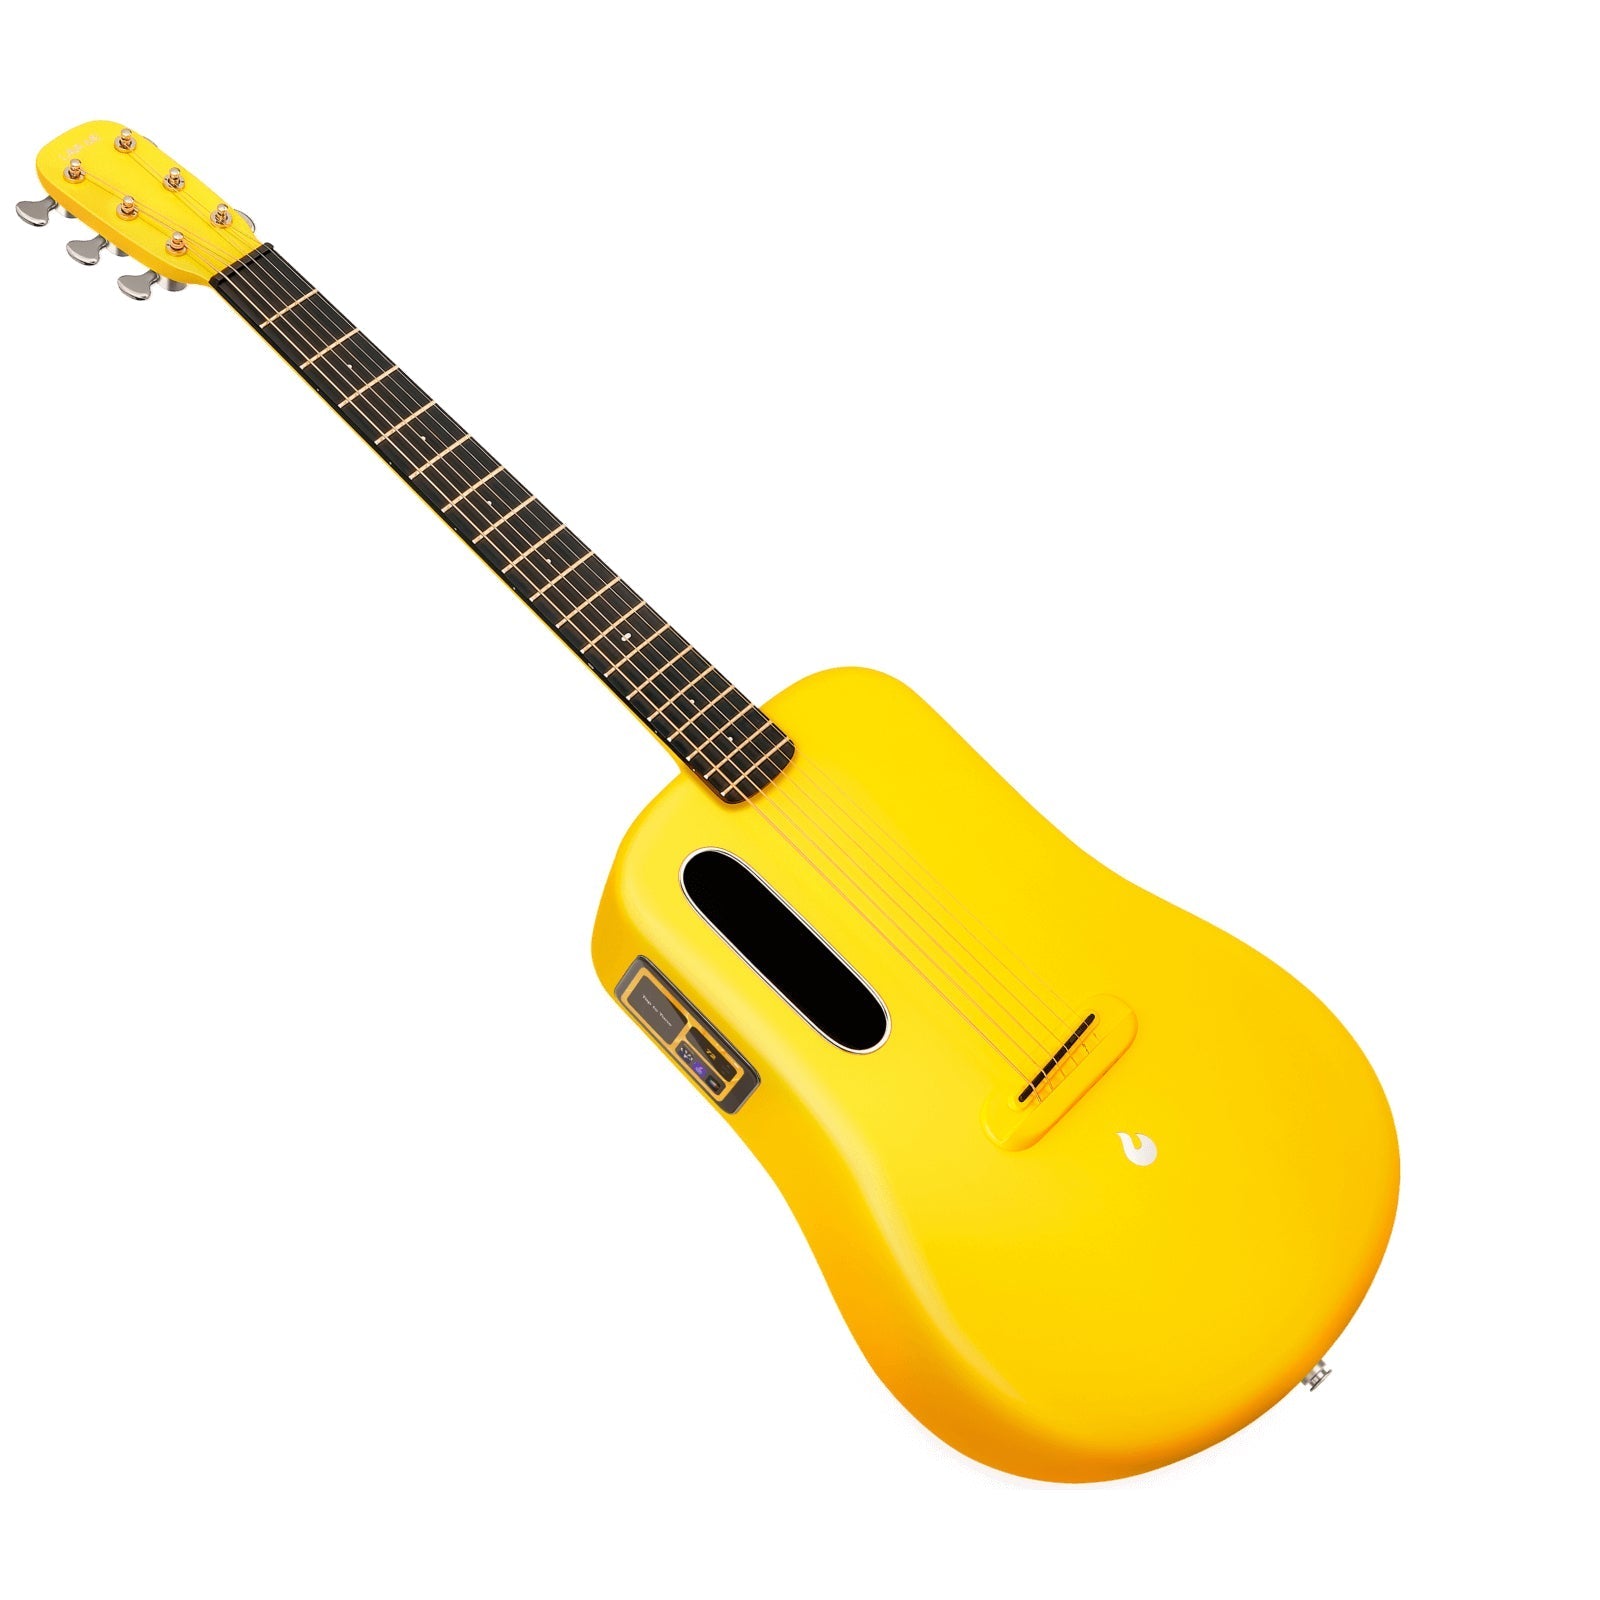 Đàn Guitar Acoustic Lava Me 3 Limited - Size 36, Golden Hour - Việt Music